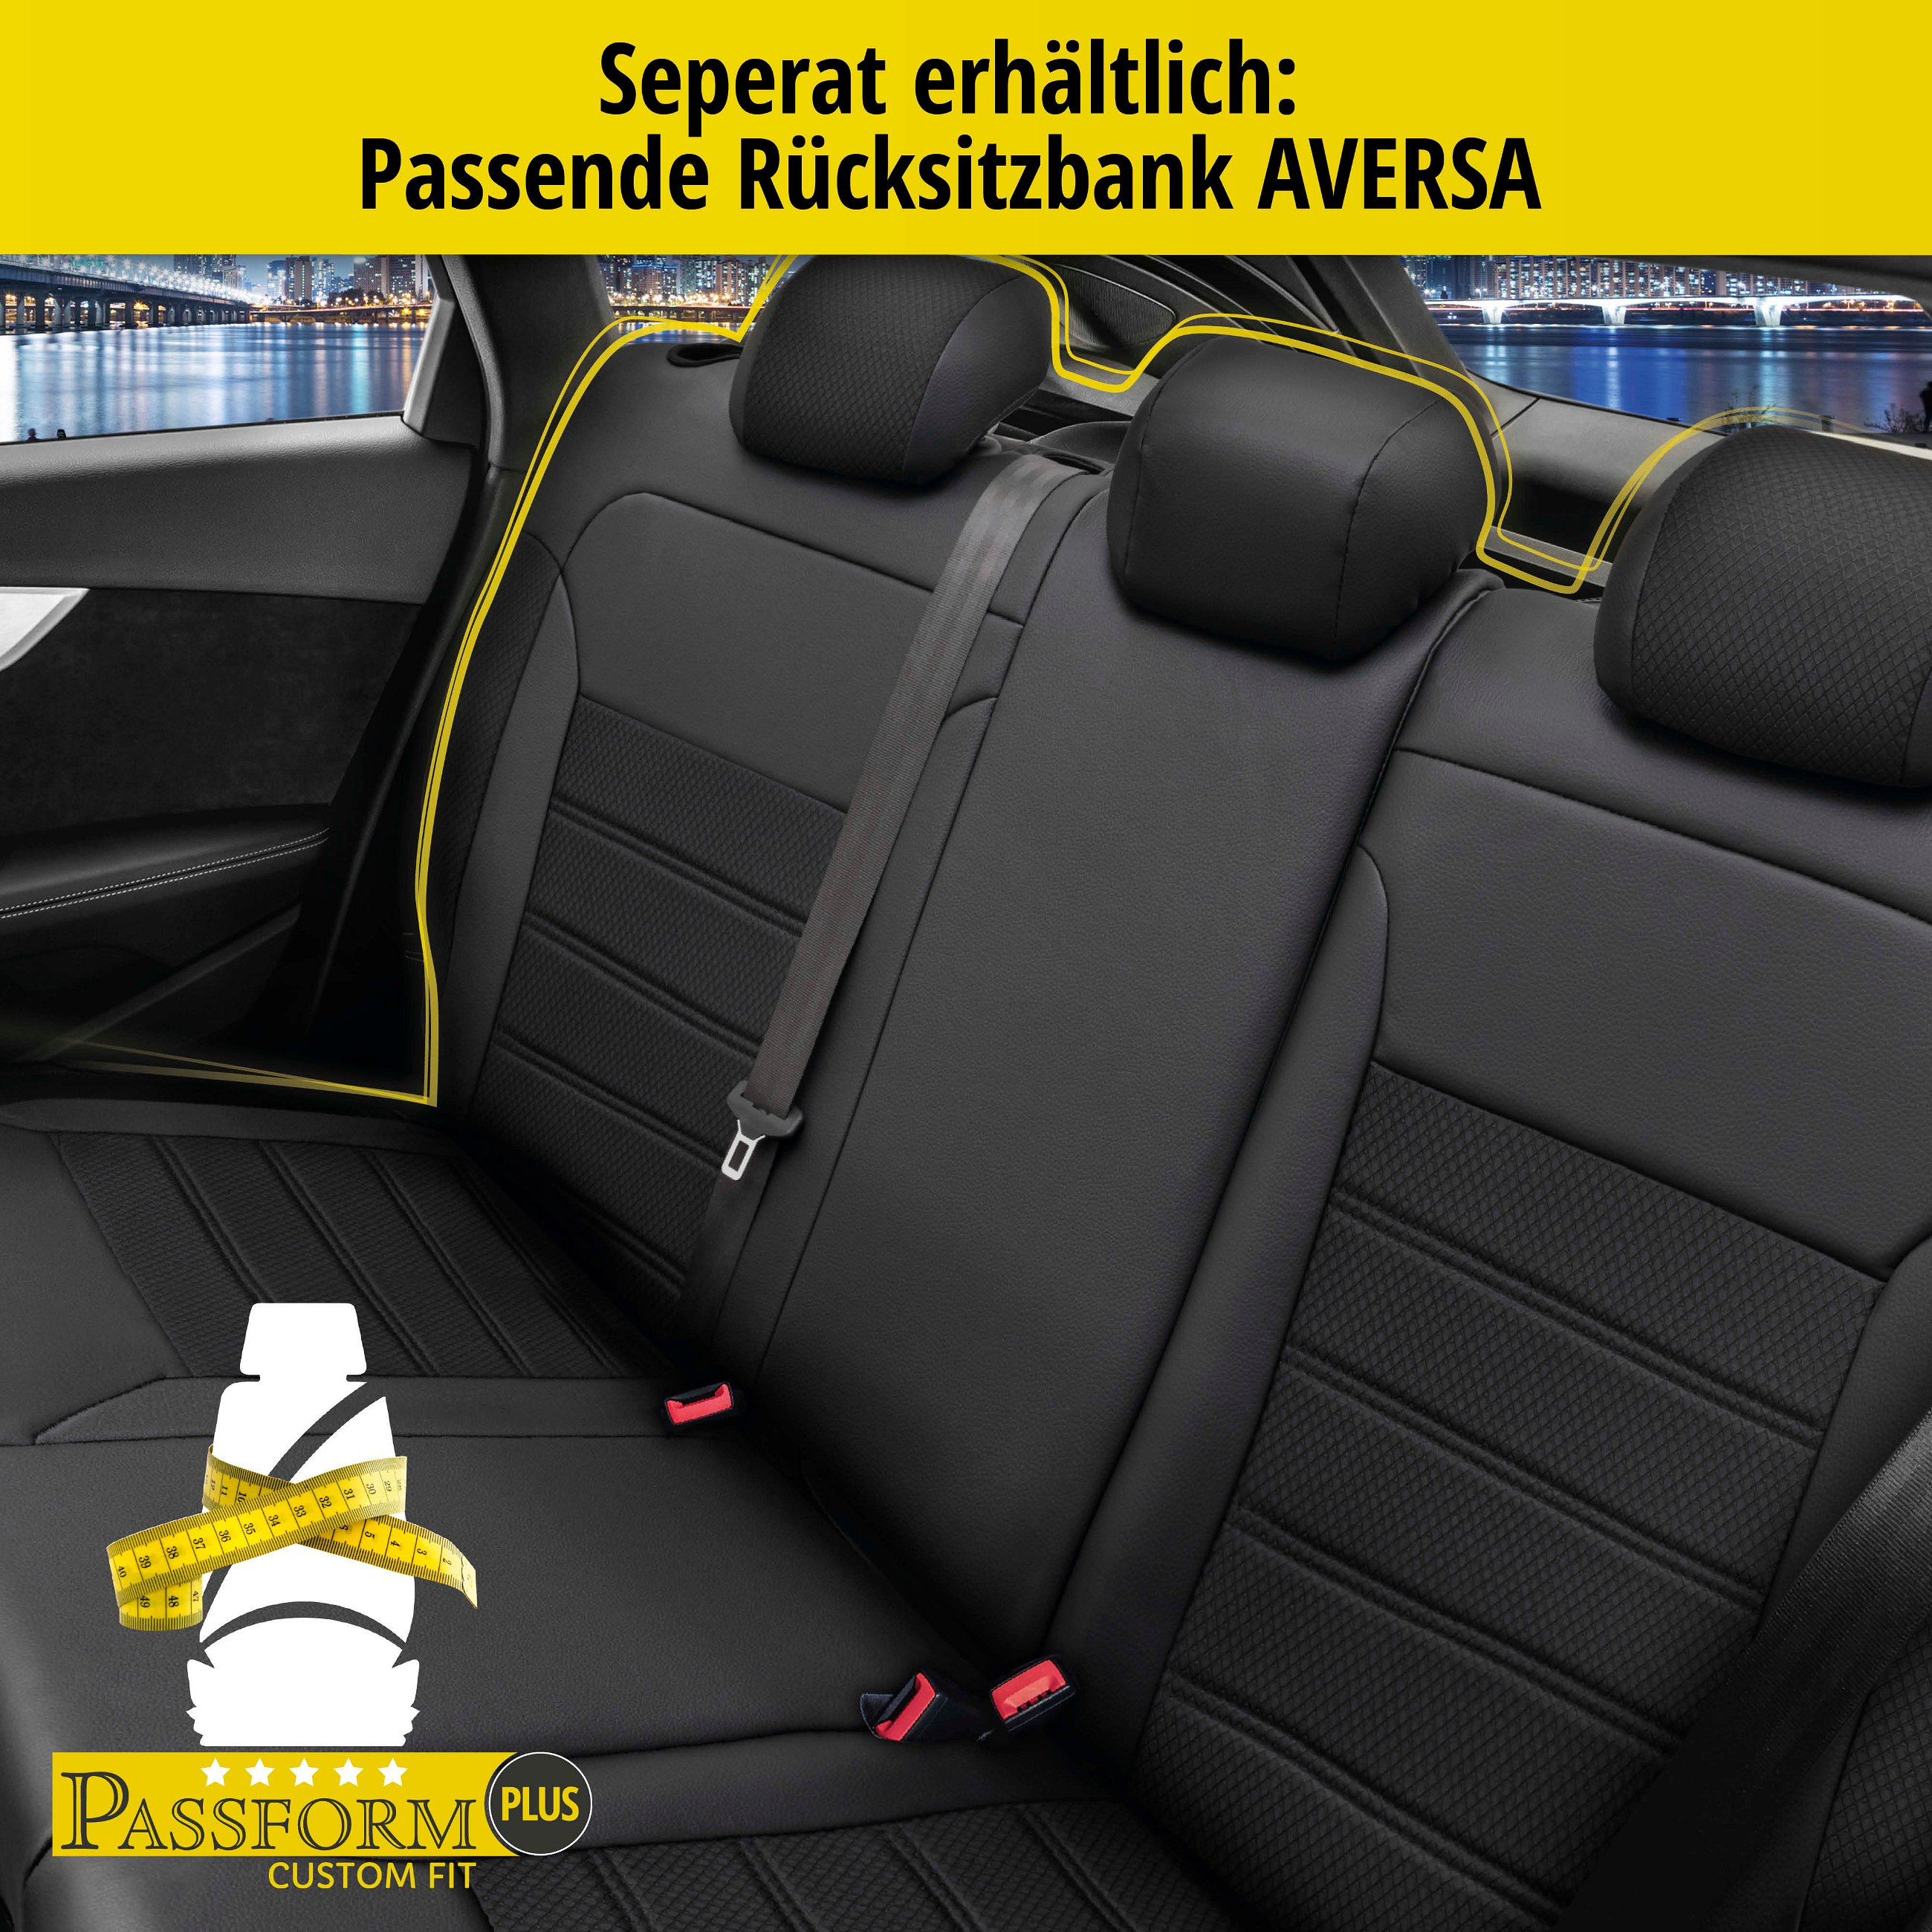 Passform Sitzbezug Aversa für Dacia Sandero II 10/2012-Heute, 2 Einzelsitzbezüge für Normalsitze